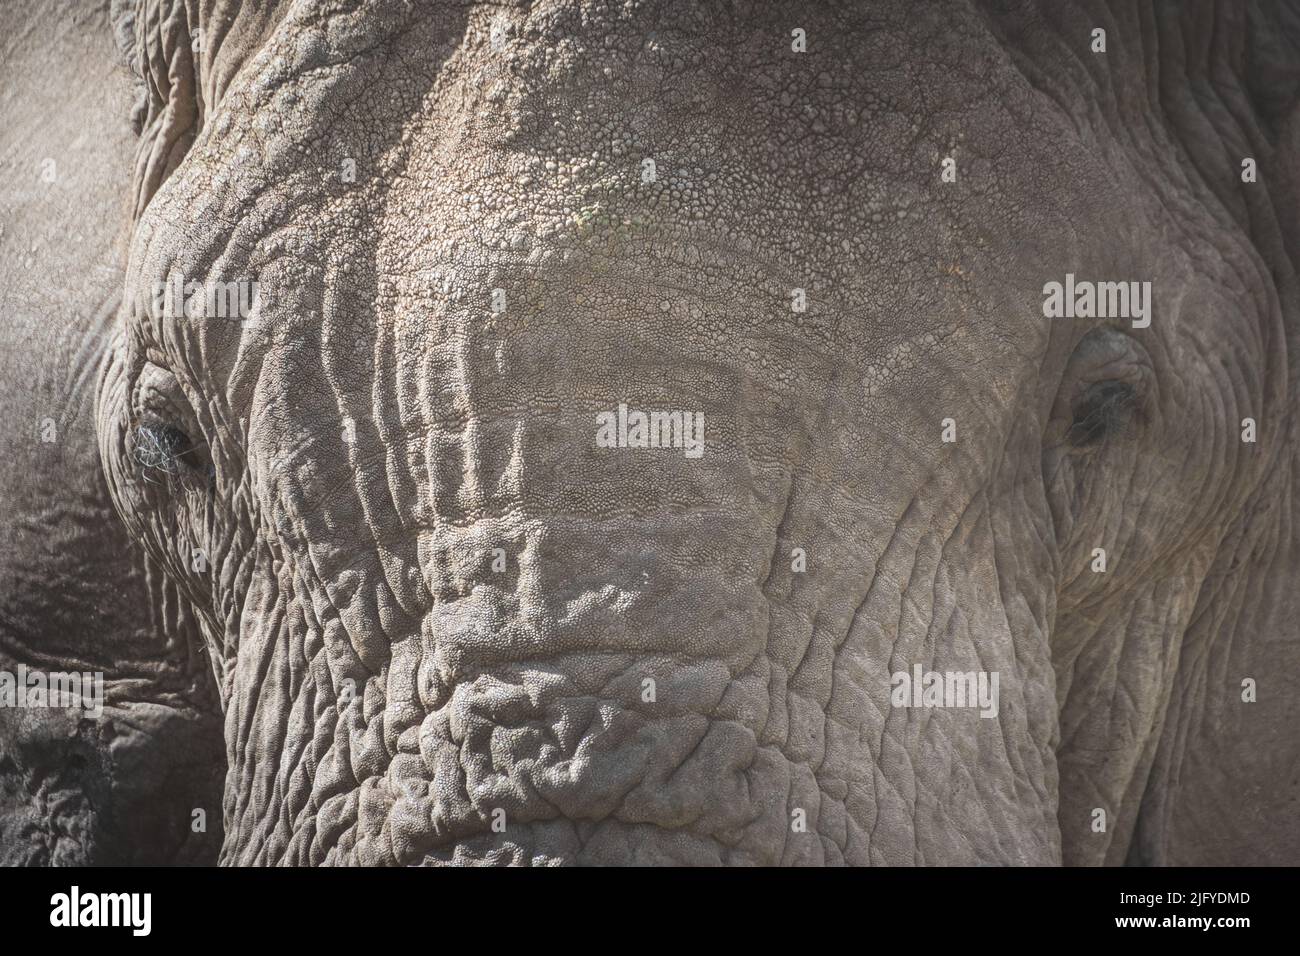 Nahaufnahme eines isolierten großen erwachsenen männlichen Elefanten (Elephantidae) im Grünlandschutzgebiet des Ngorongoro-Kraters. Safari-Konzept für Wildtiere. Tansania. Af Stockfoto